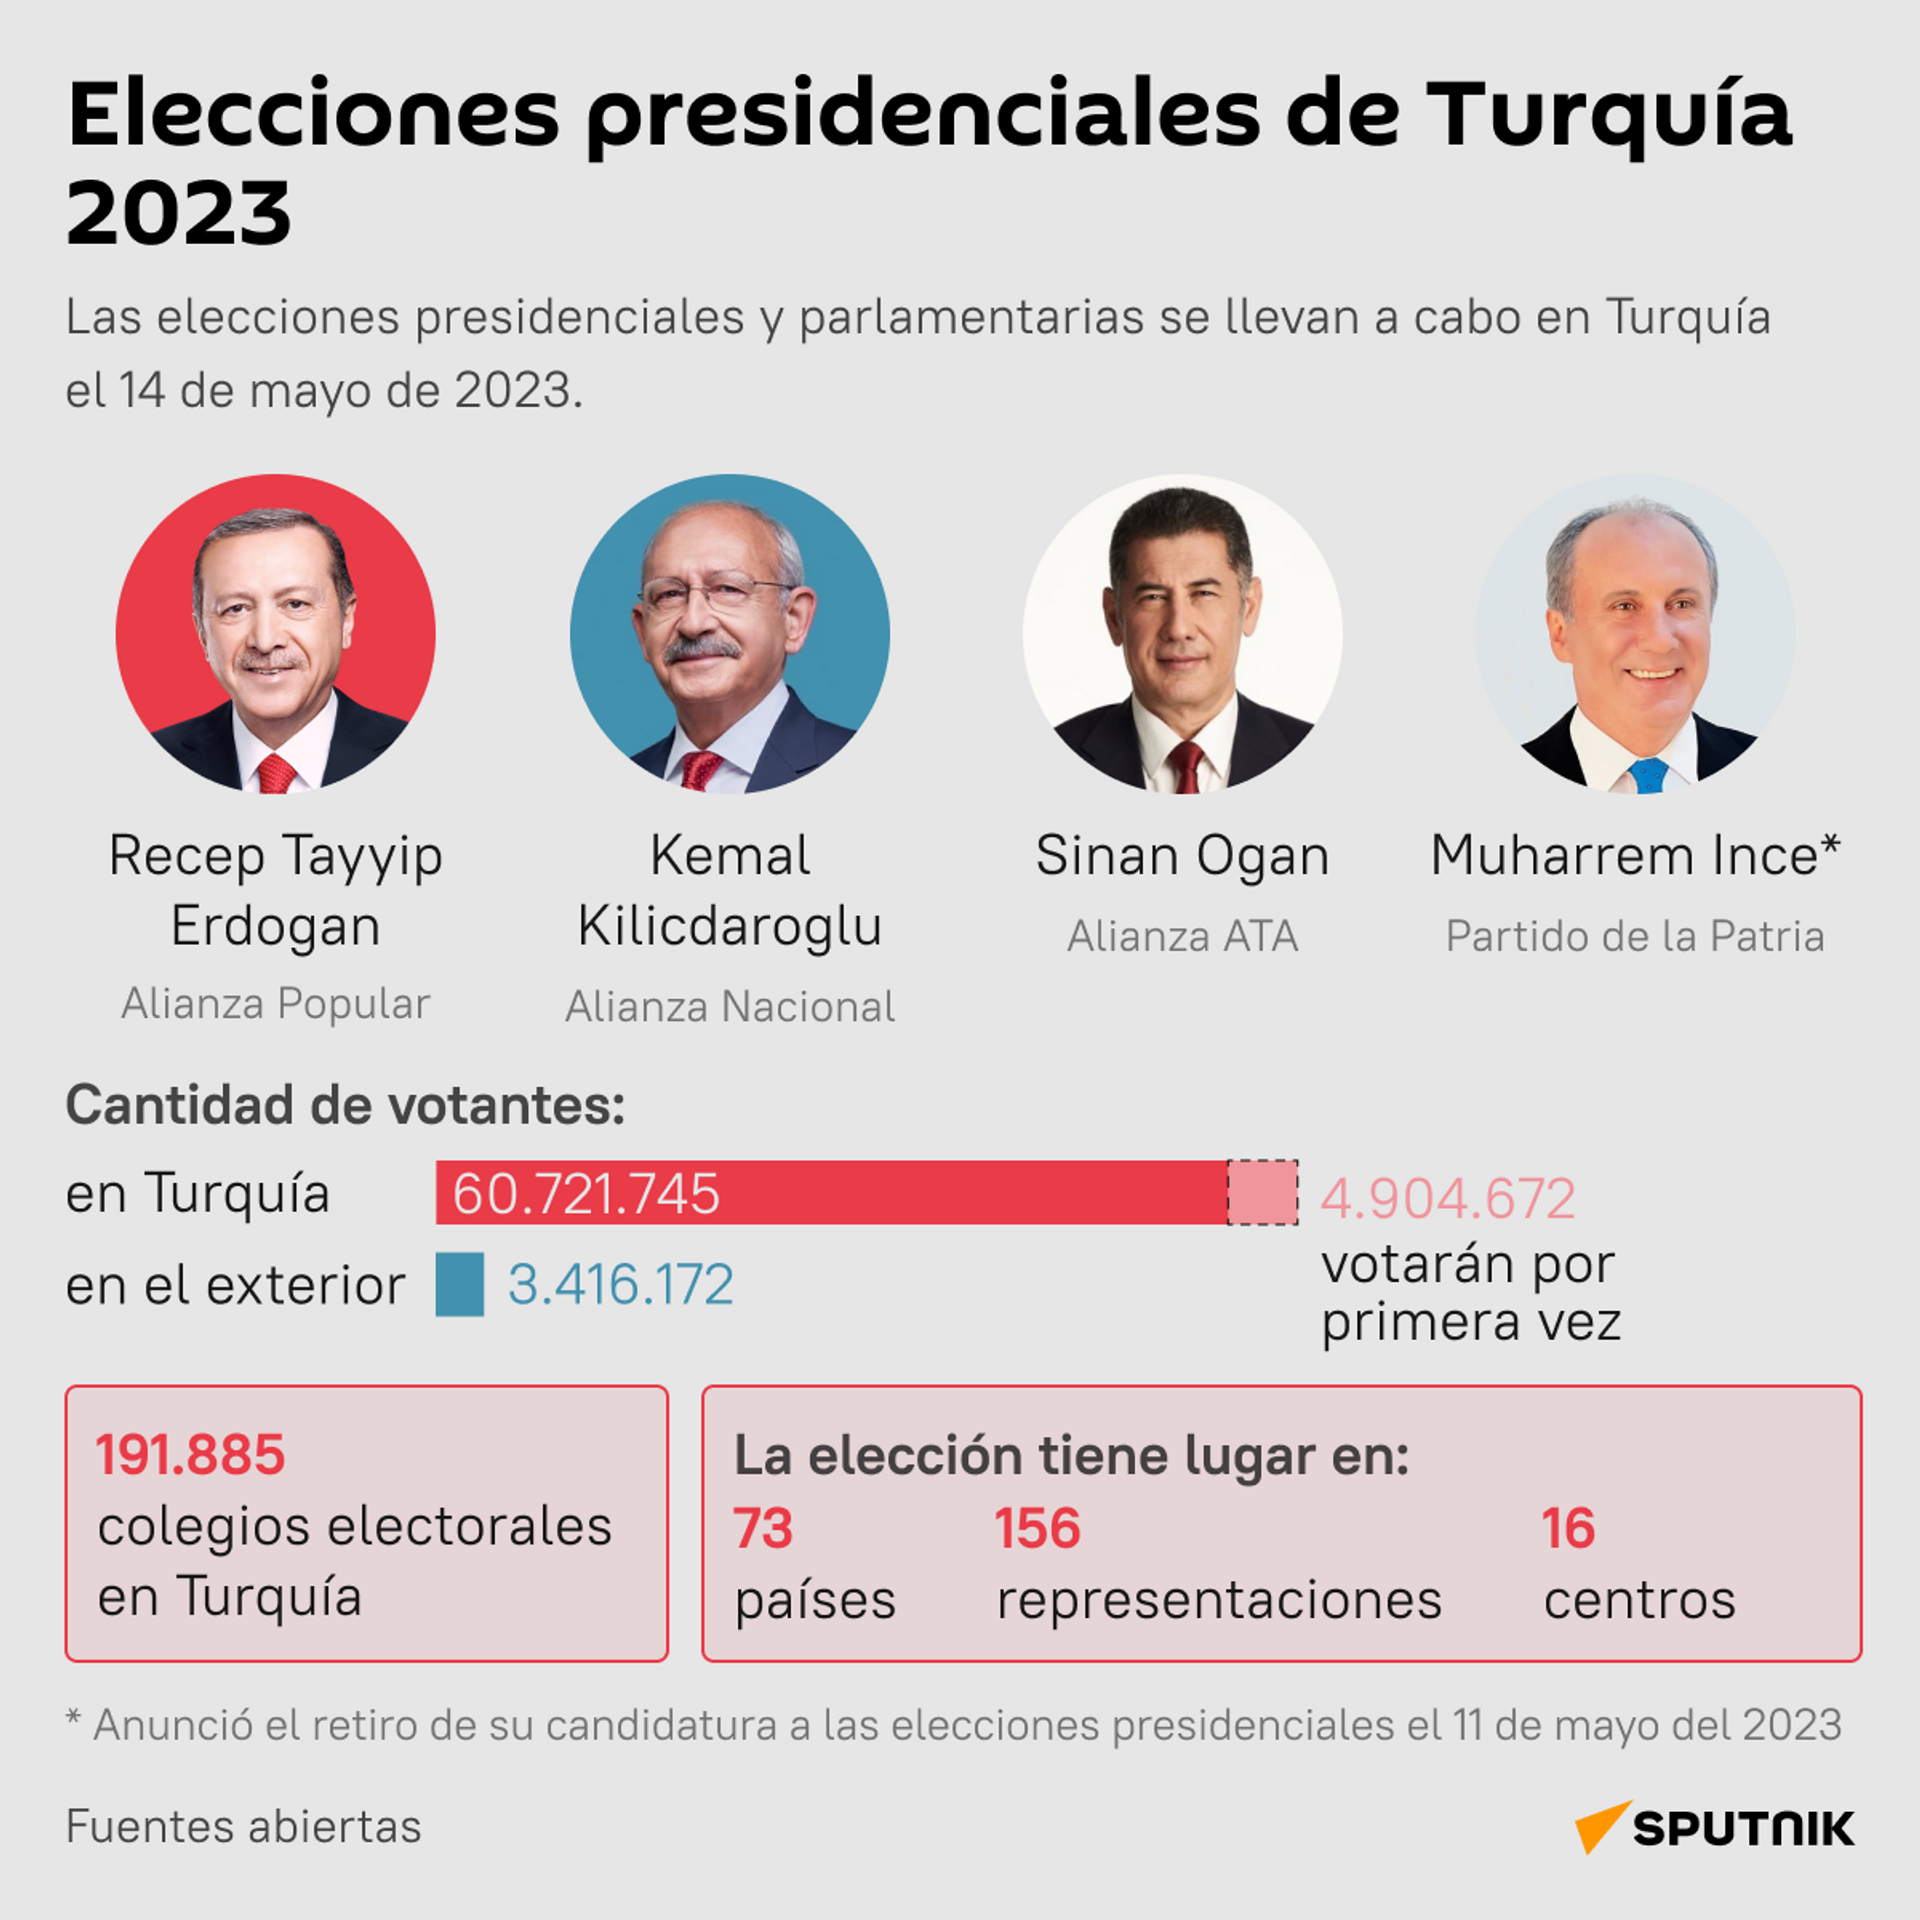 Las elecciones presidenciales en Turquía 2023 - Sputnik Mundo, 1920, 14.05.2023